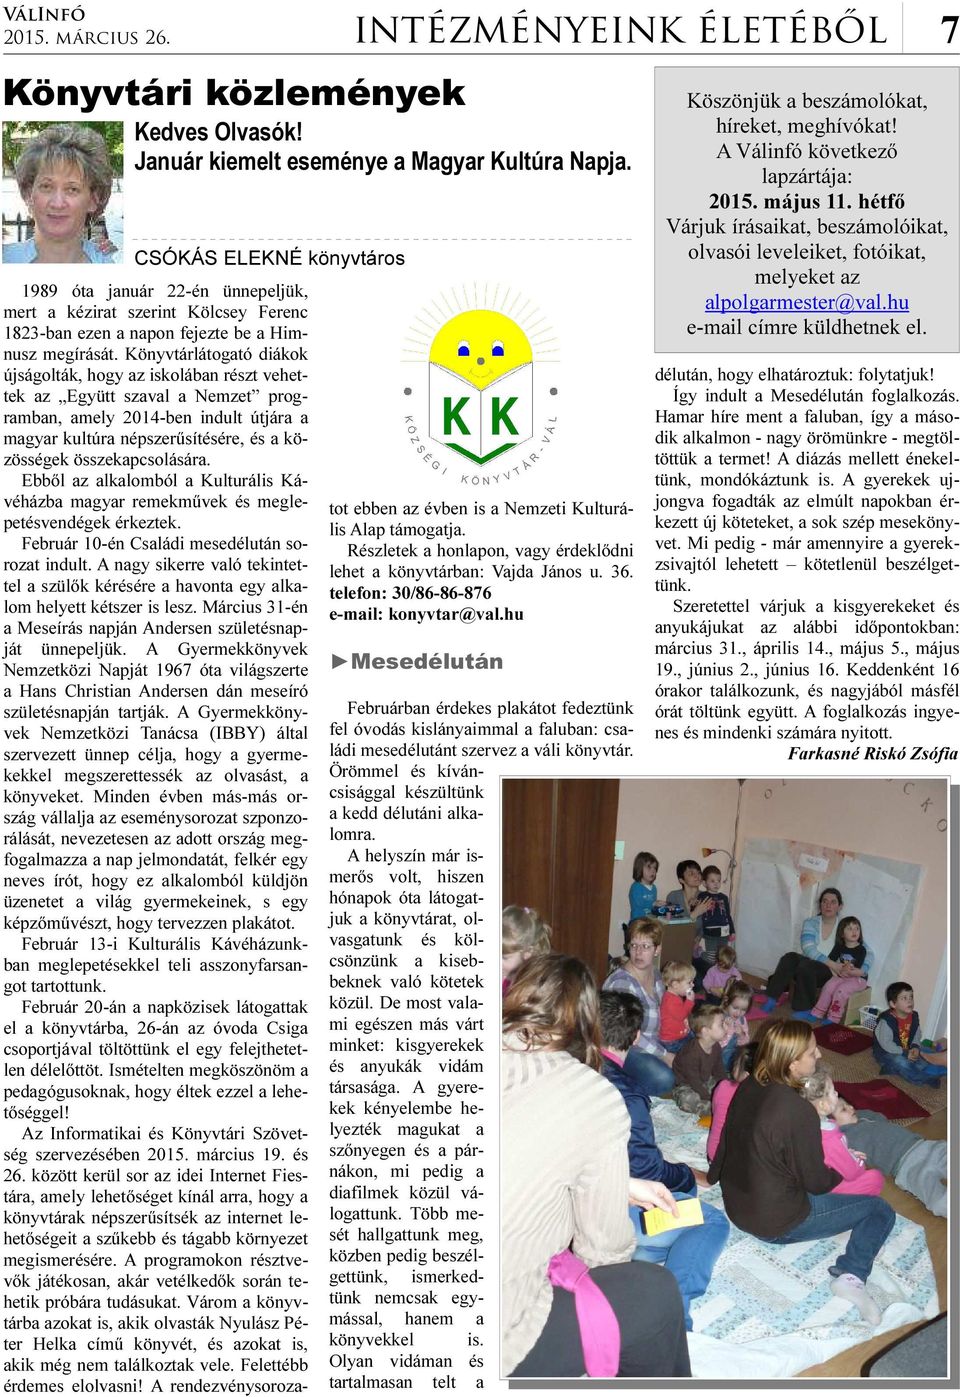 Könyvtárlátogató diákok újságolták, hogy az iskolában részt vehettek az Együtt szaval a Nemzet programban, amely 2014-ben indult útjára a magyar kultúra népszerűsítésére, és a közösségek